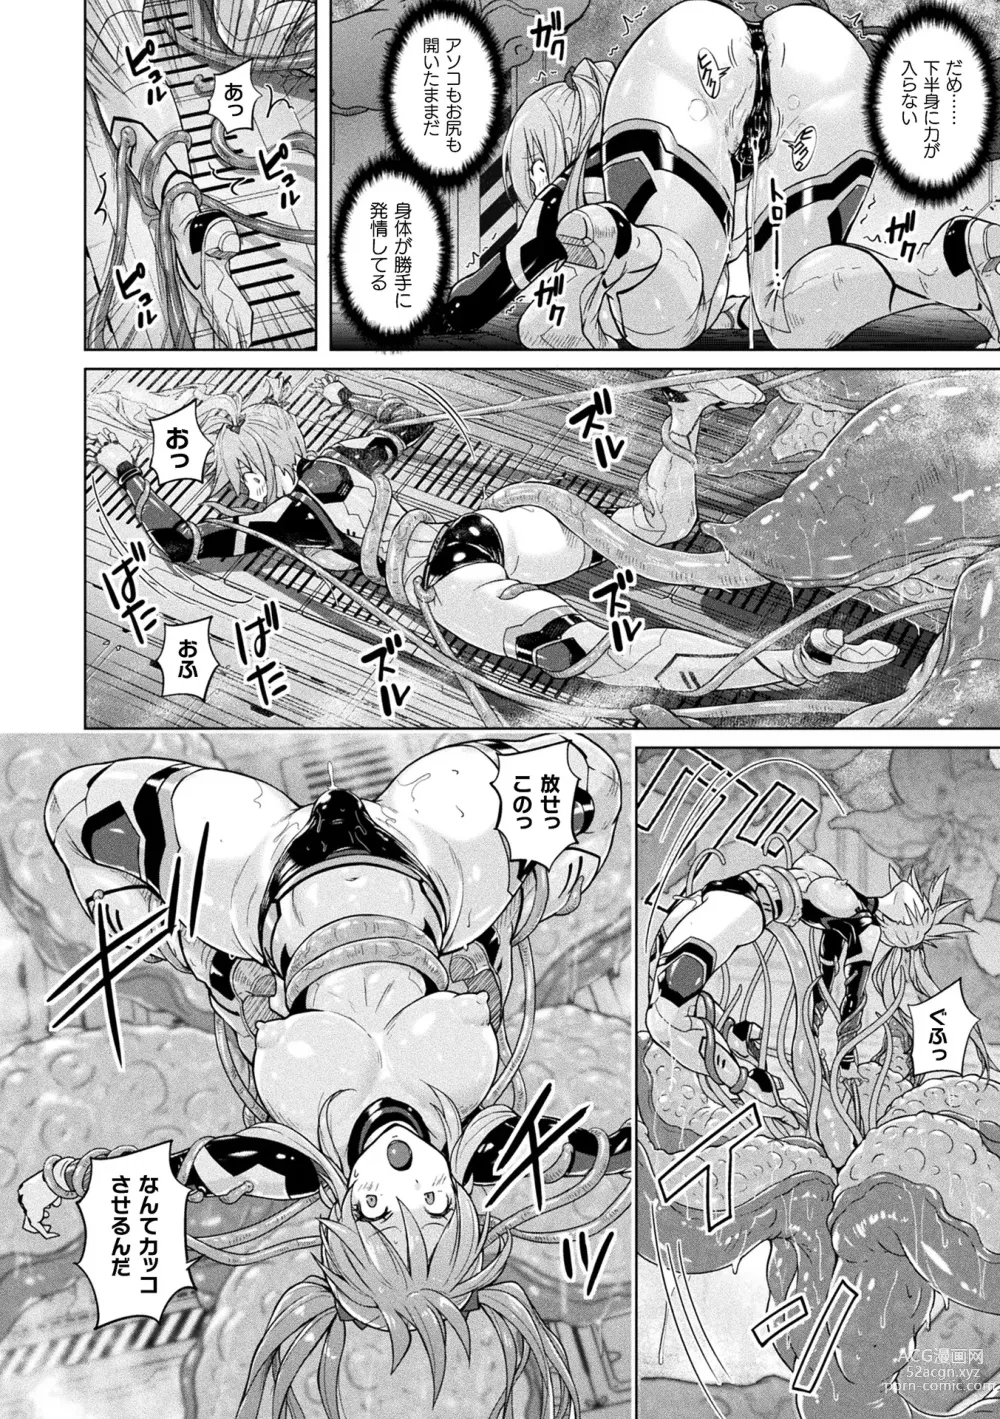 Page 18 of manga Picchiri Pantsism